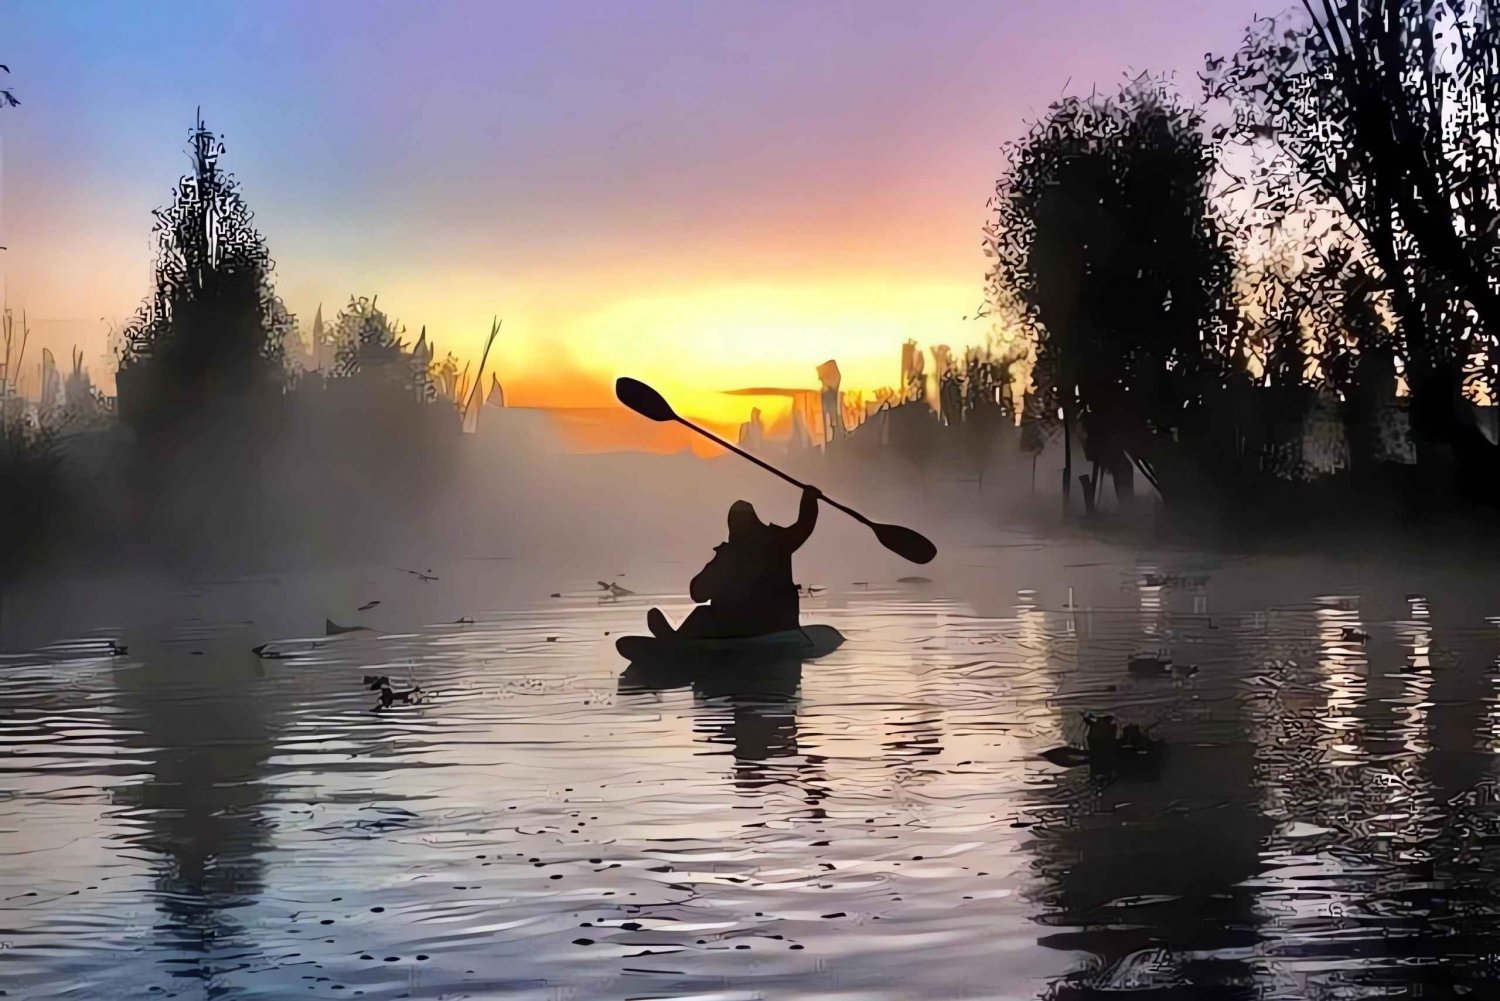 Mexico city: Kayak ride on lake Xochimilco